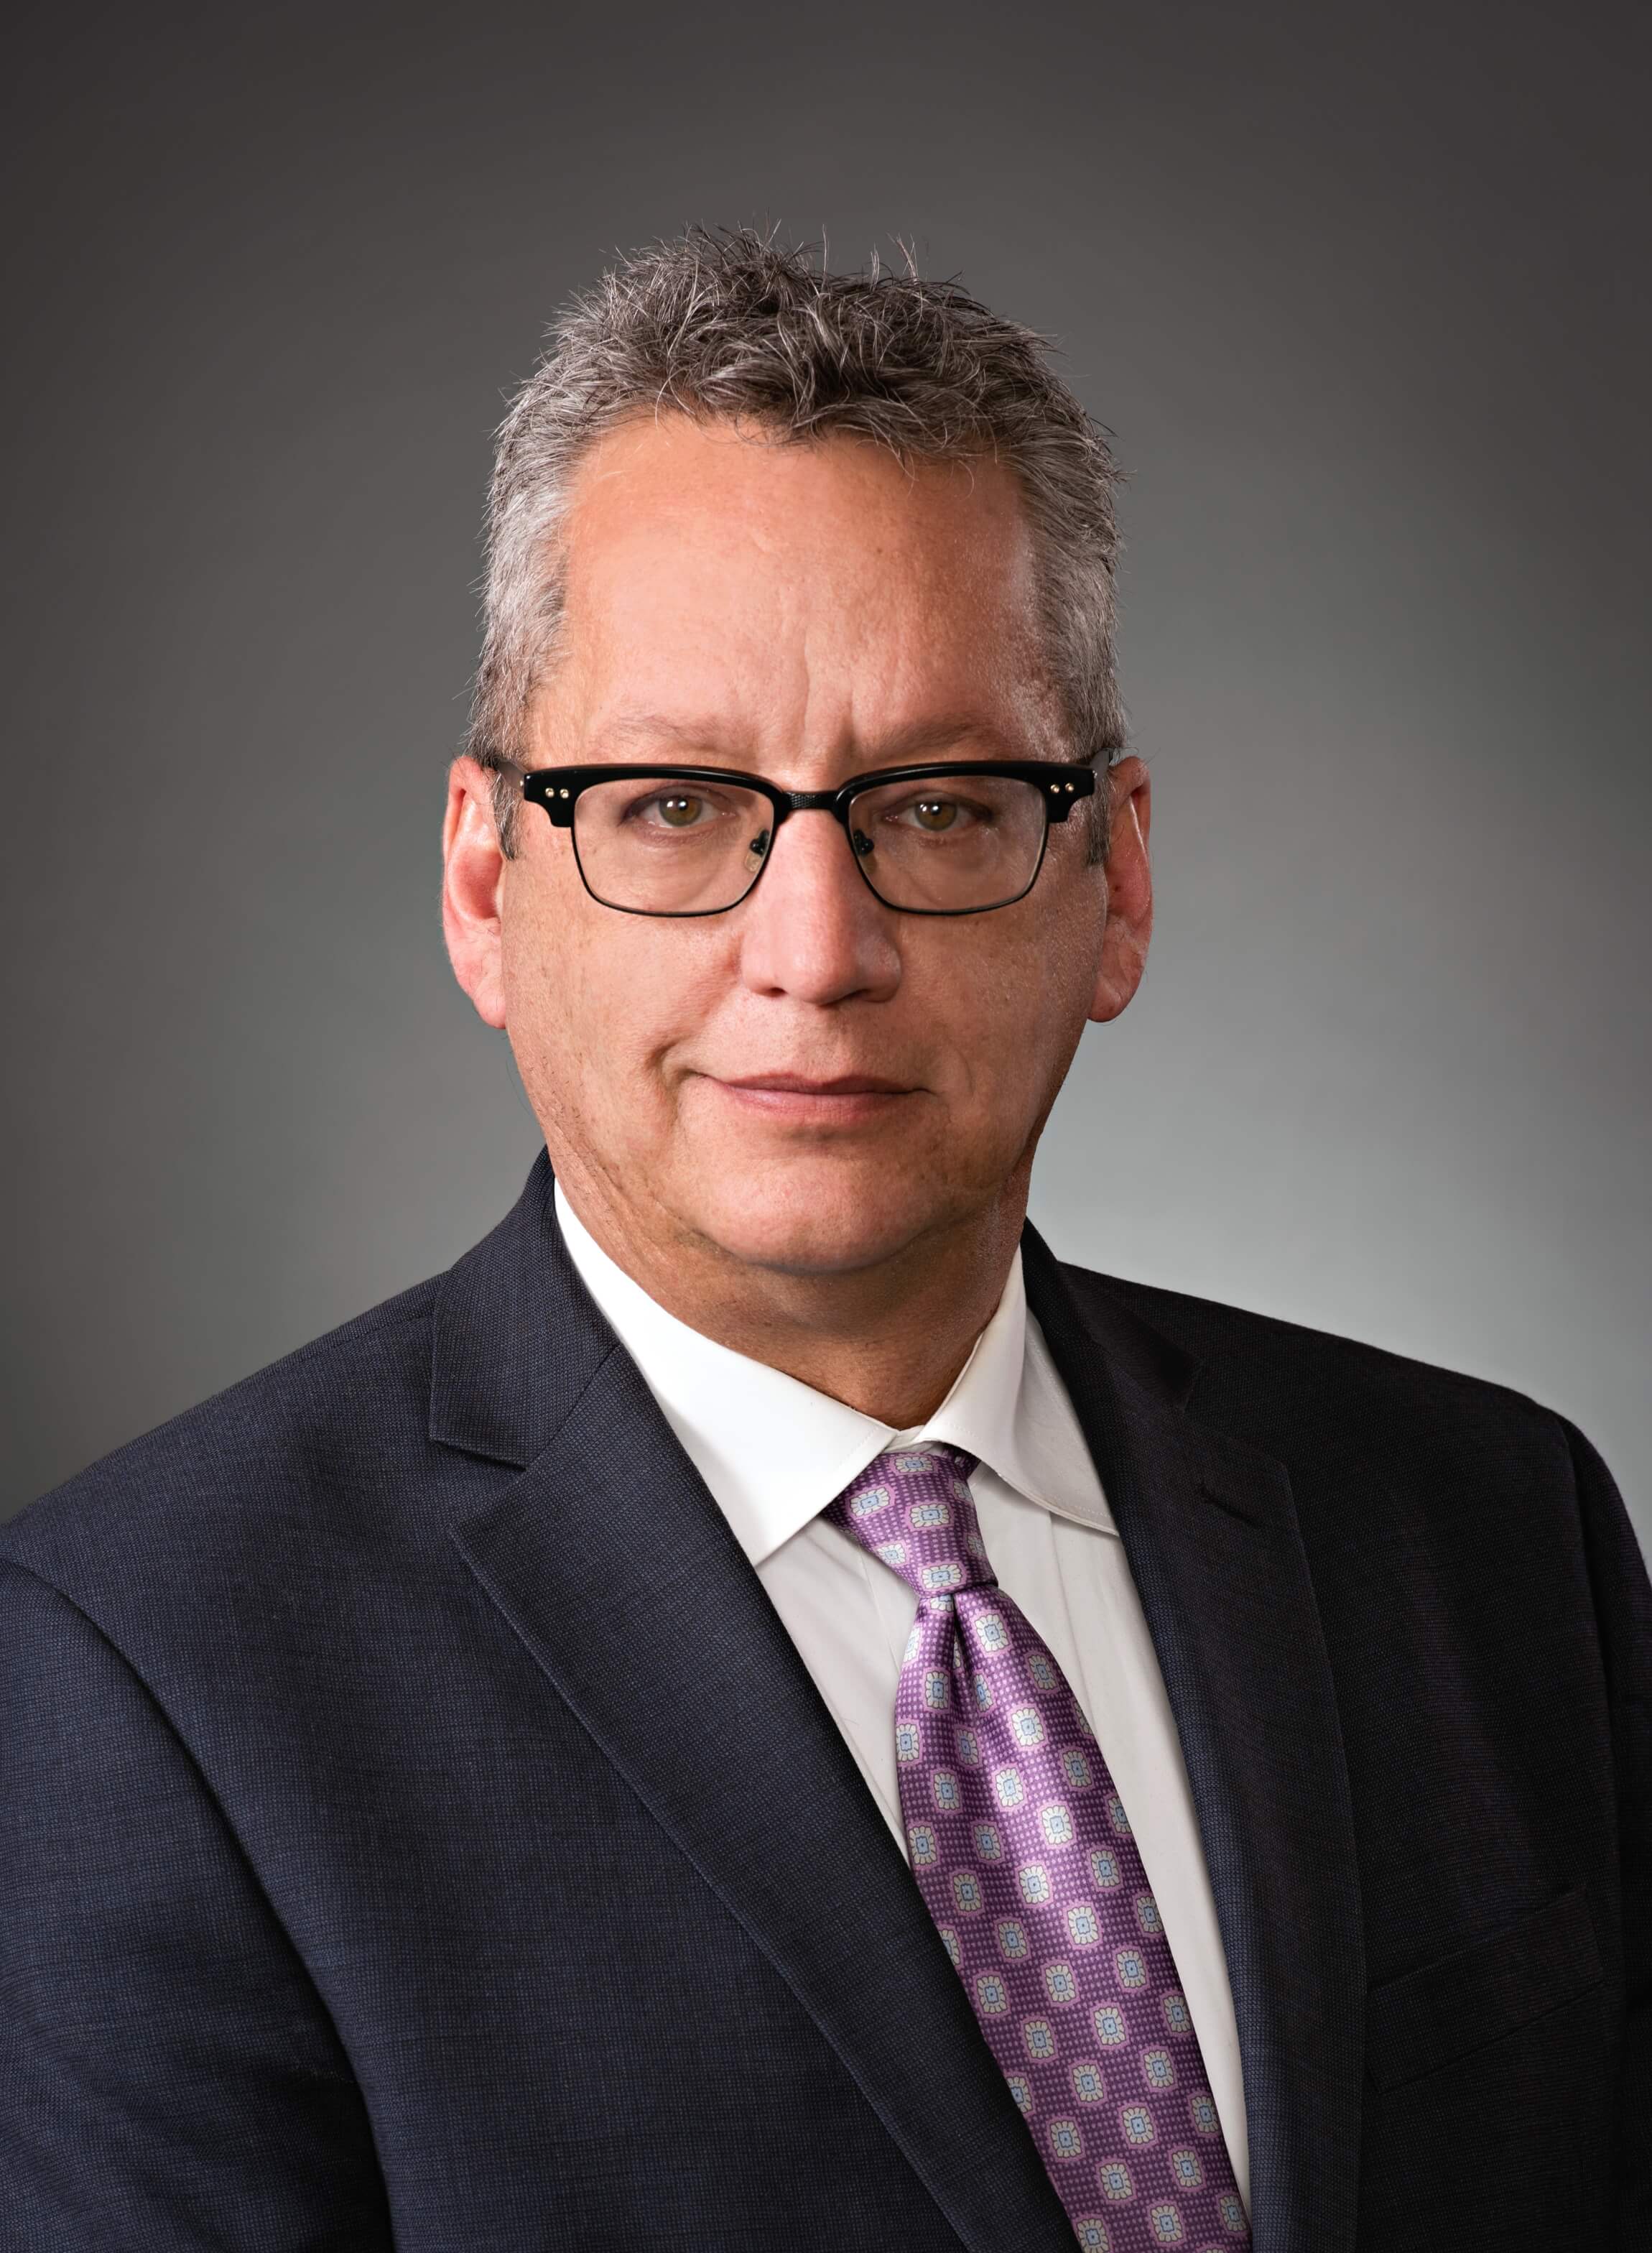 Edmonton employment lawyer Richard D. Smith